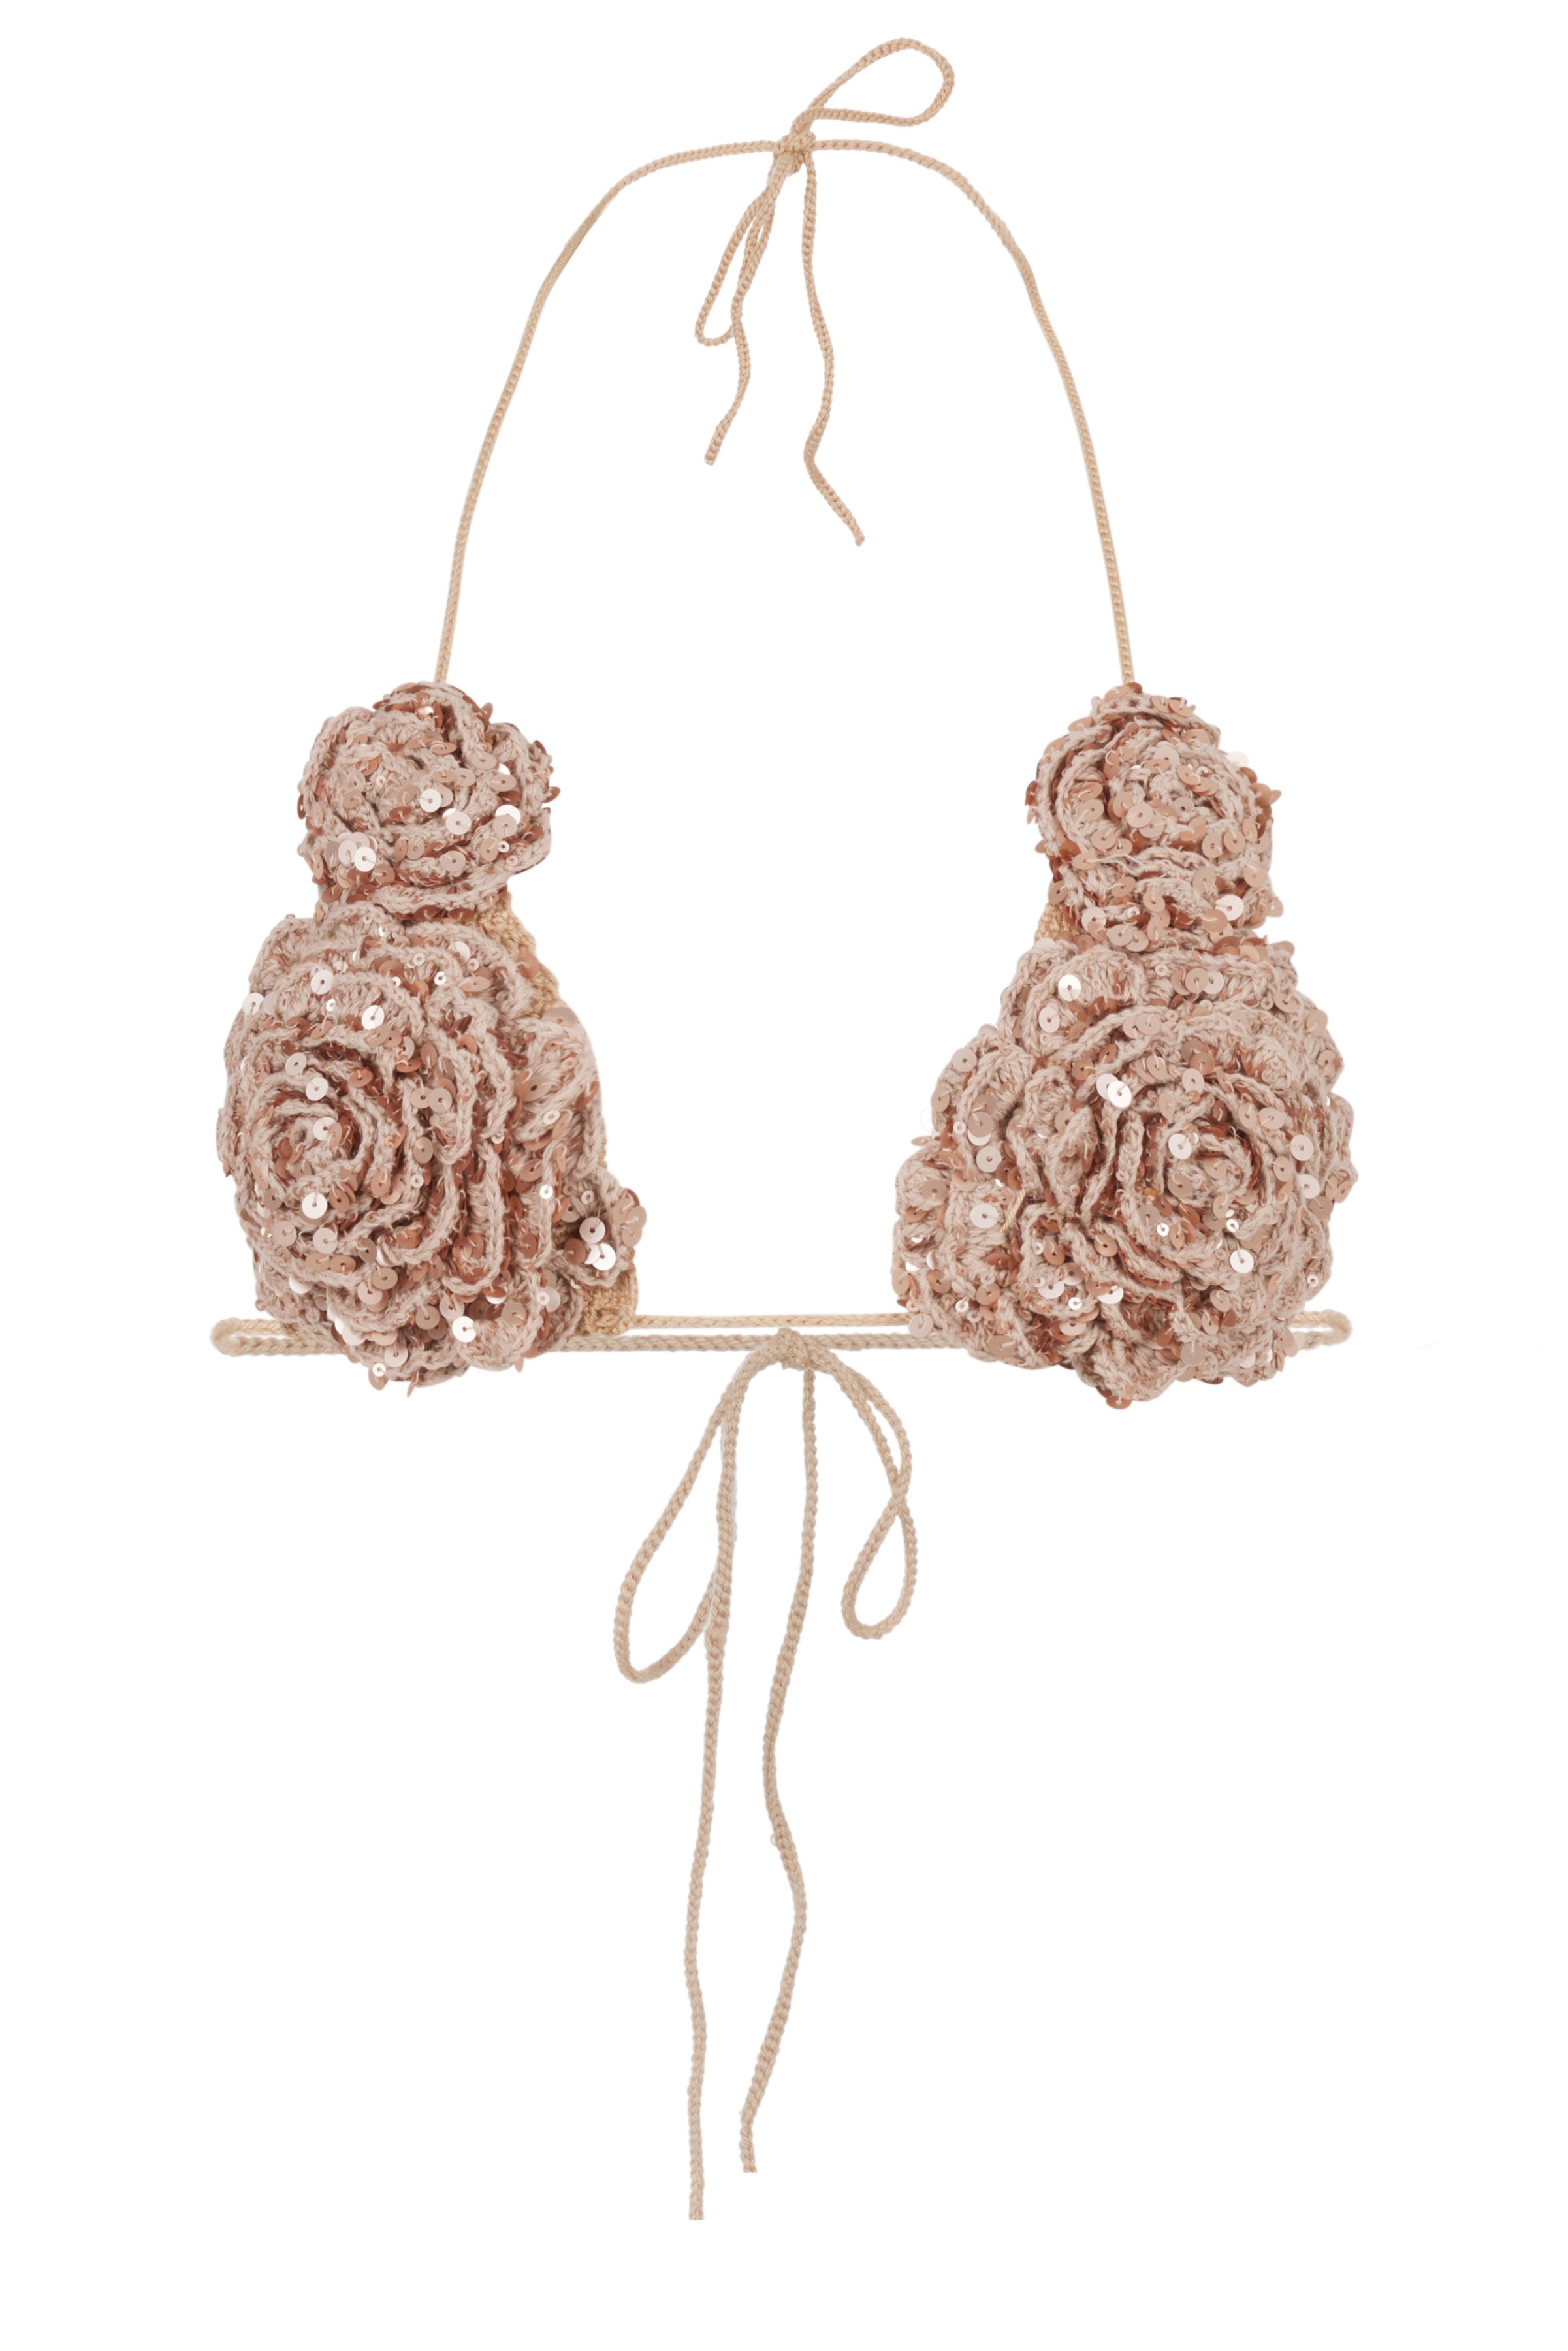 Mirel Prentice Handmade Knit Flower Bra Top In Brown